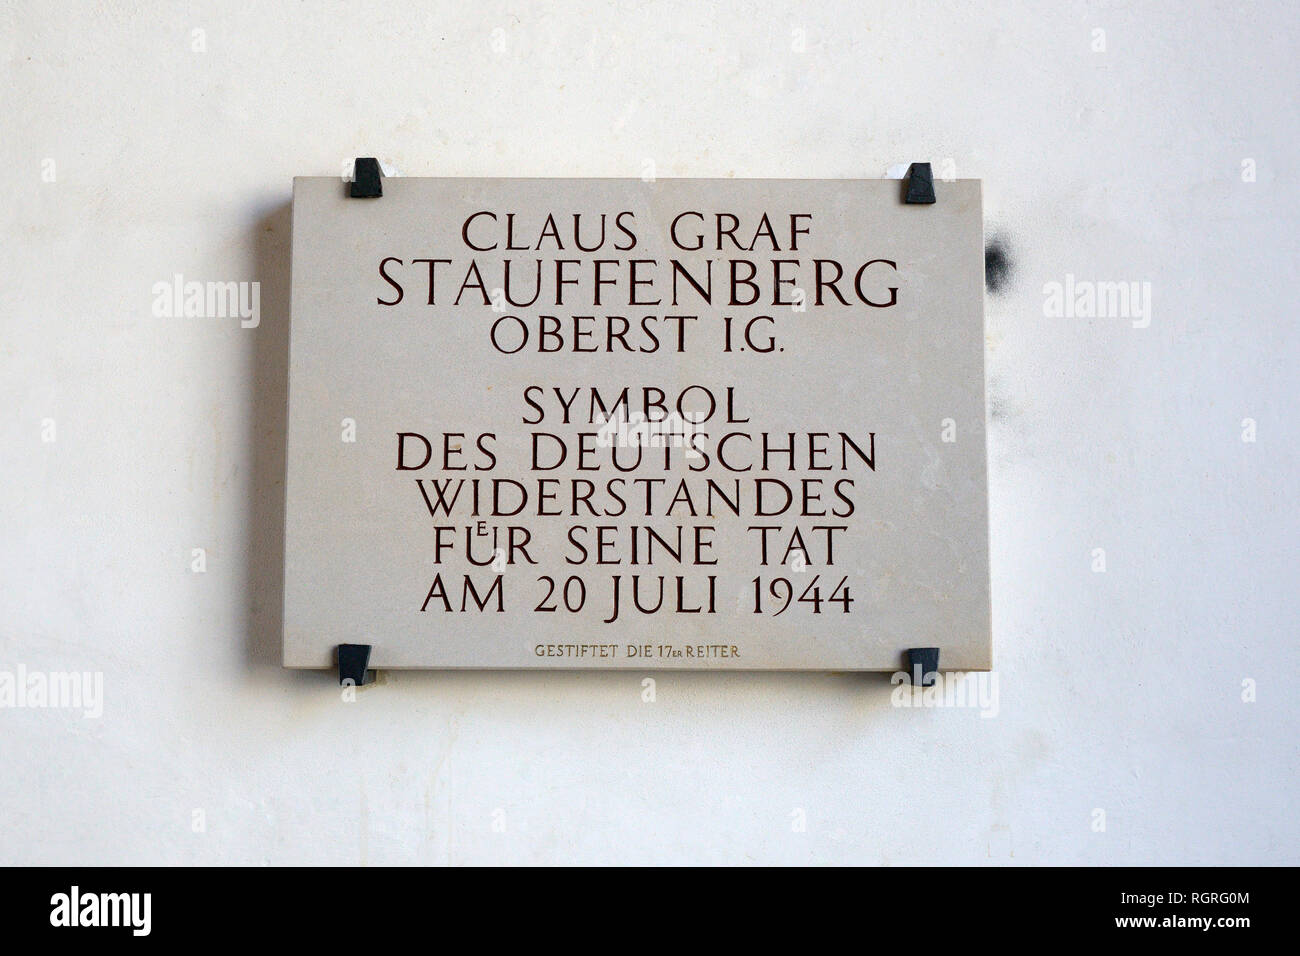 Gedenktafel fuer Claus Graf Stauffenberg, am Alten Rathaus, Bamberg, Oberfranken, Franken, Bayern, Deutschland, Europa, Widerstand Stockfoto